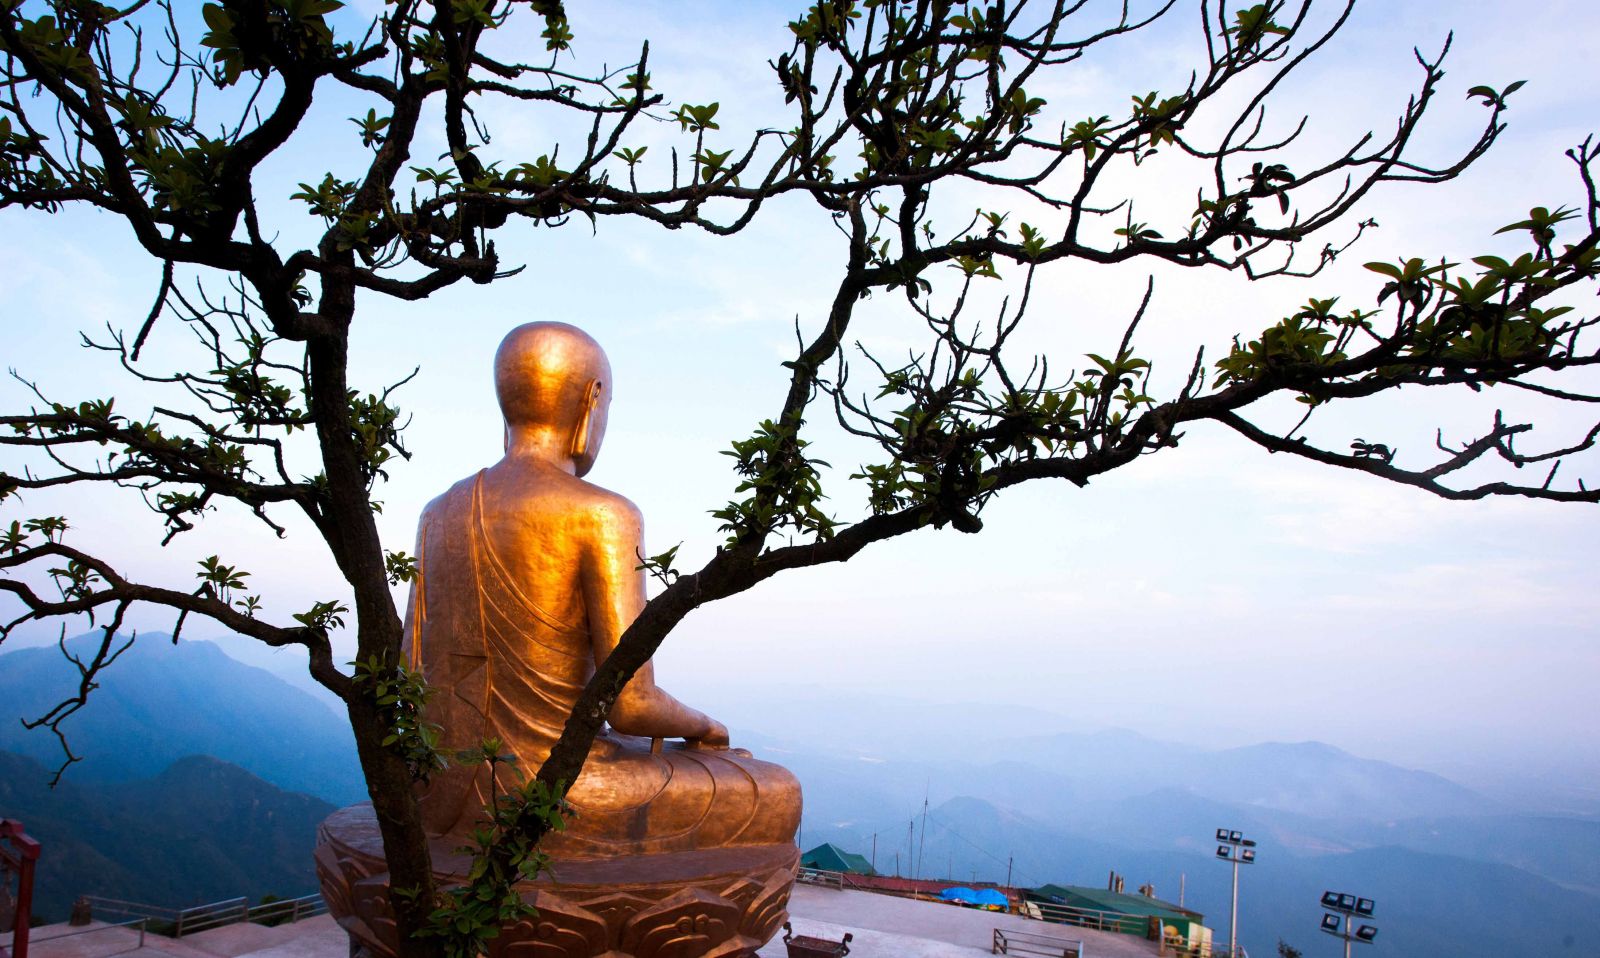 Bảo tượng Phật hoàng Trần Nhân Tông trong tư thế tham thiền nhập định giữa bao la hùng vĩ của núi rừng Yên Tử có trọng lượng 138 tấn, là pho tượng đồng nguyên khối trên núi lớn nhất Việt Nam.